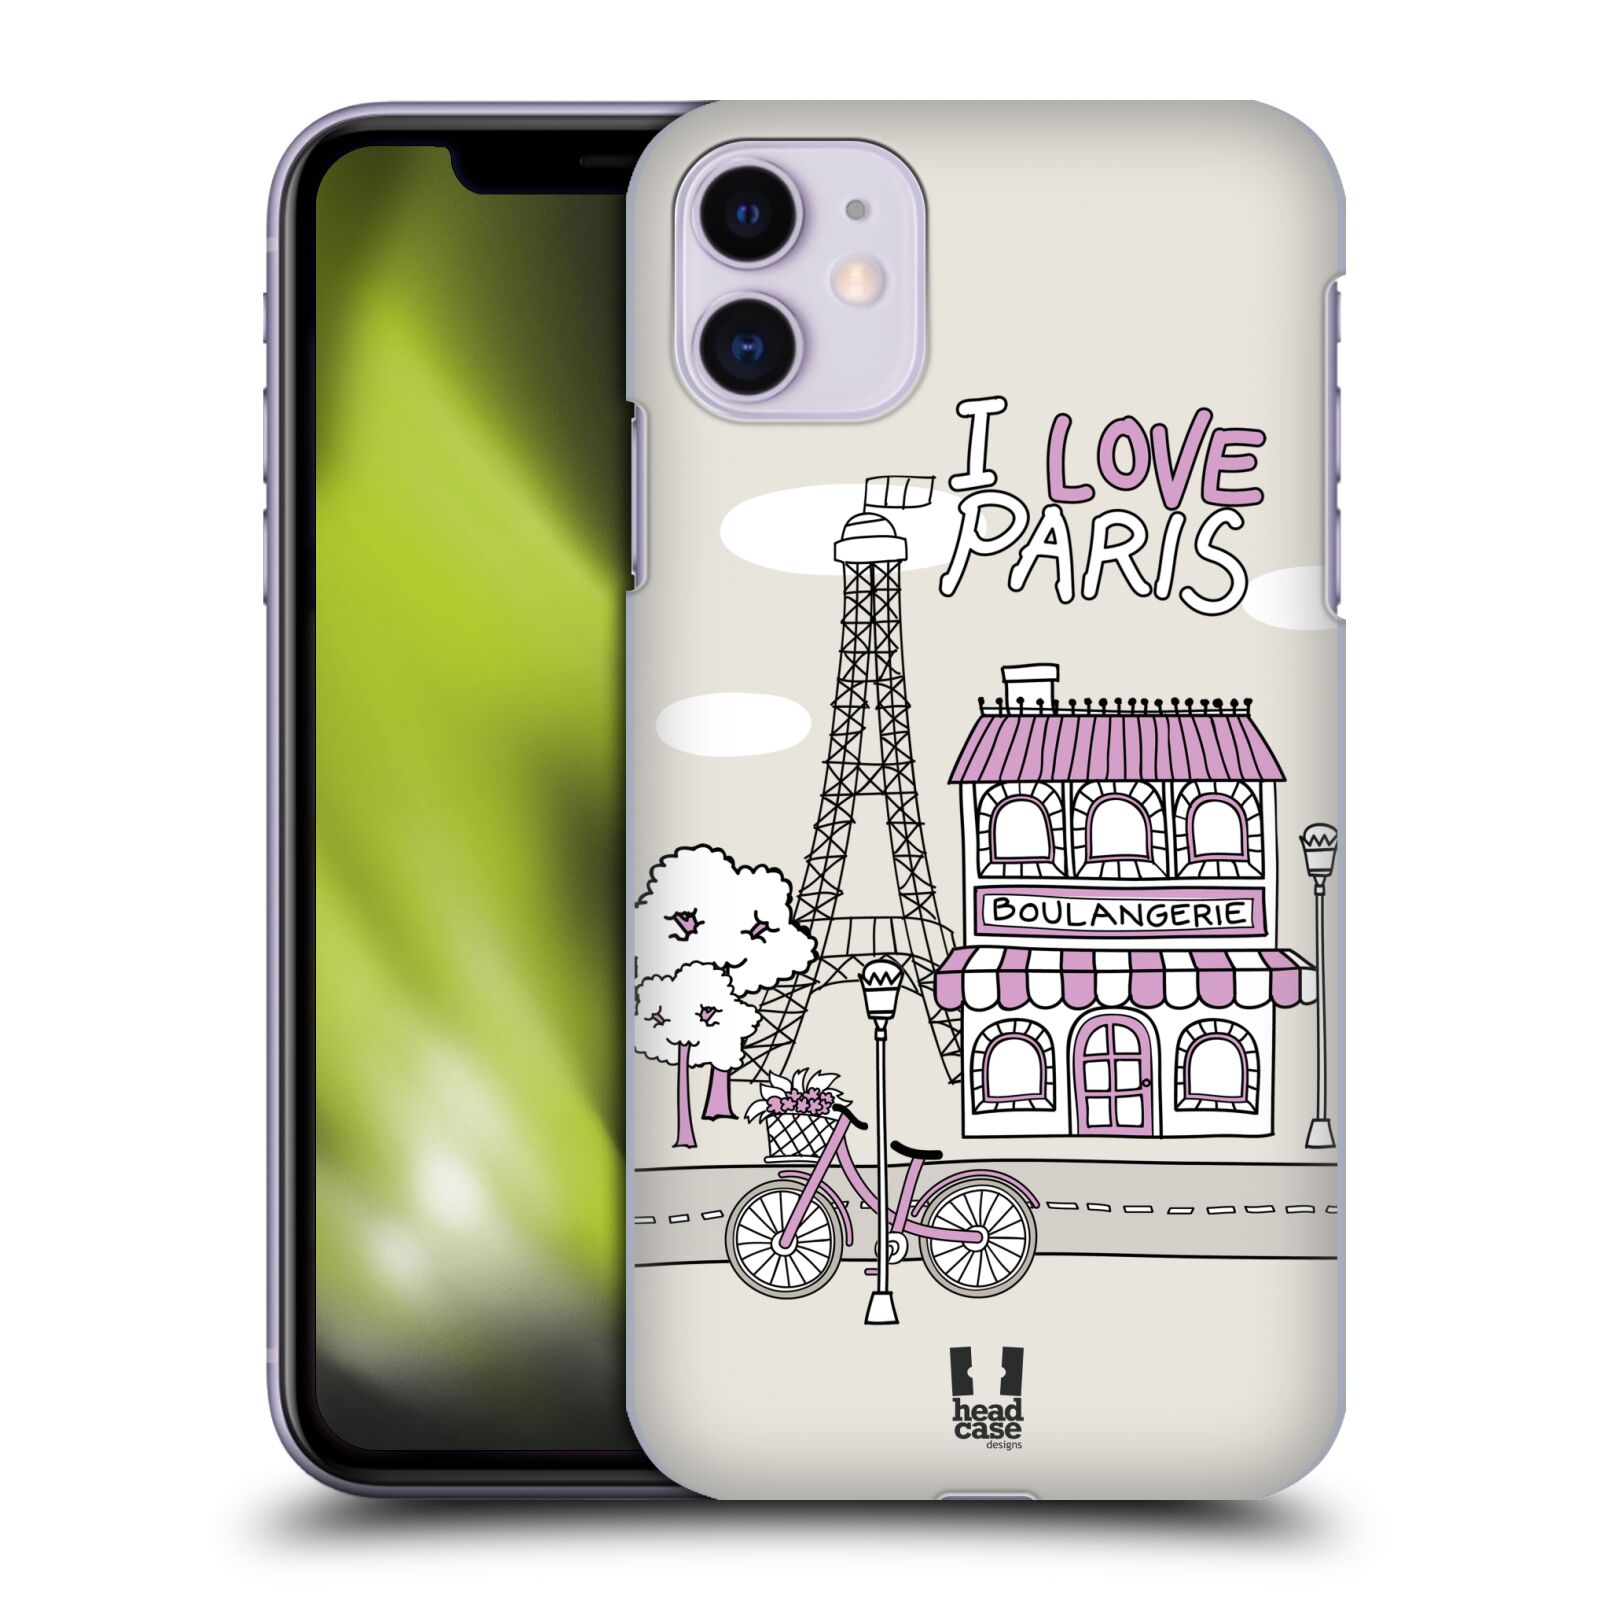 Pouzdro na mobil Apple Iphone 11 - HEAD CASE - vzor Kreslená městečka FIALOVÁ, Paříž, Francie, I LOVE PARIS